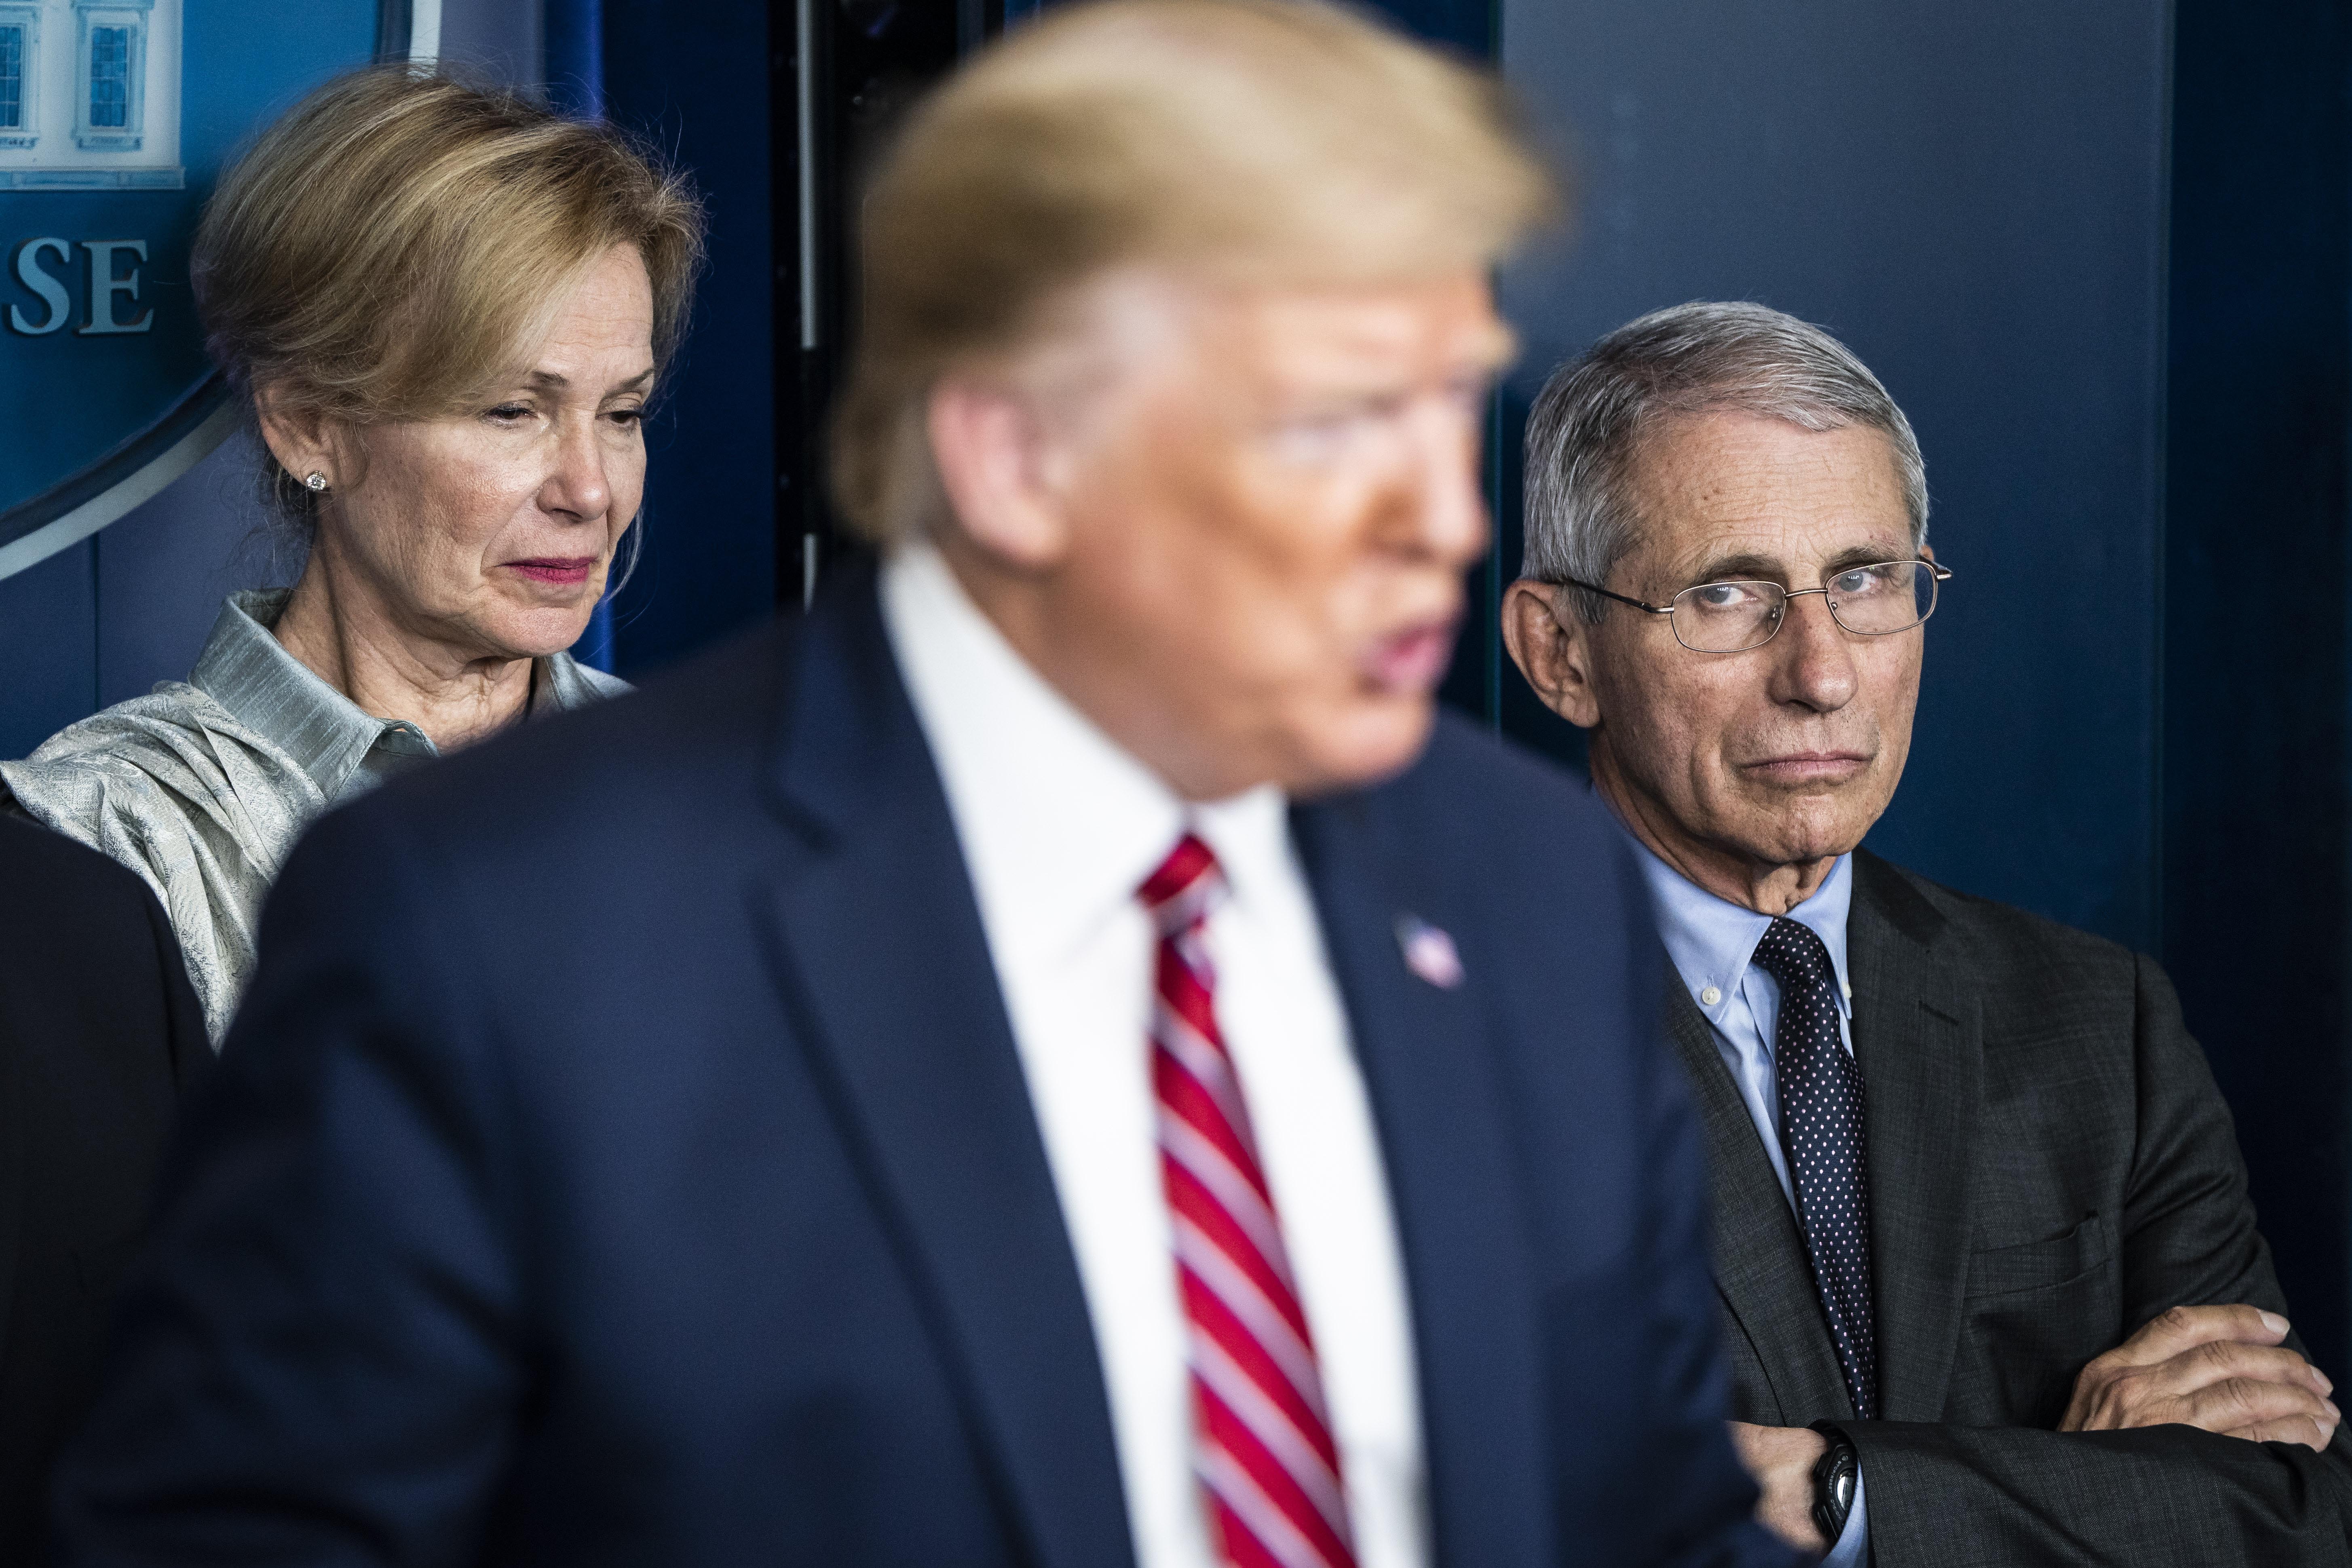 Dari kiri di latar belakang, Dr. Deborah Birx dan Dr. Anthony Fauci mendengarkan ketika Presiden Donald Trump berbicara pada pengarahan coronavirus di Washington, DC, pada 20 Maret.